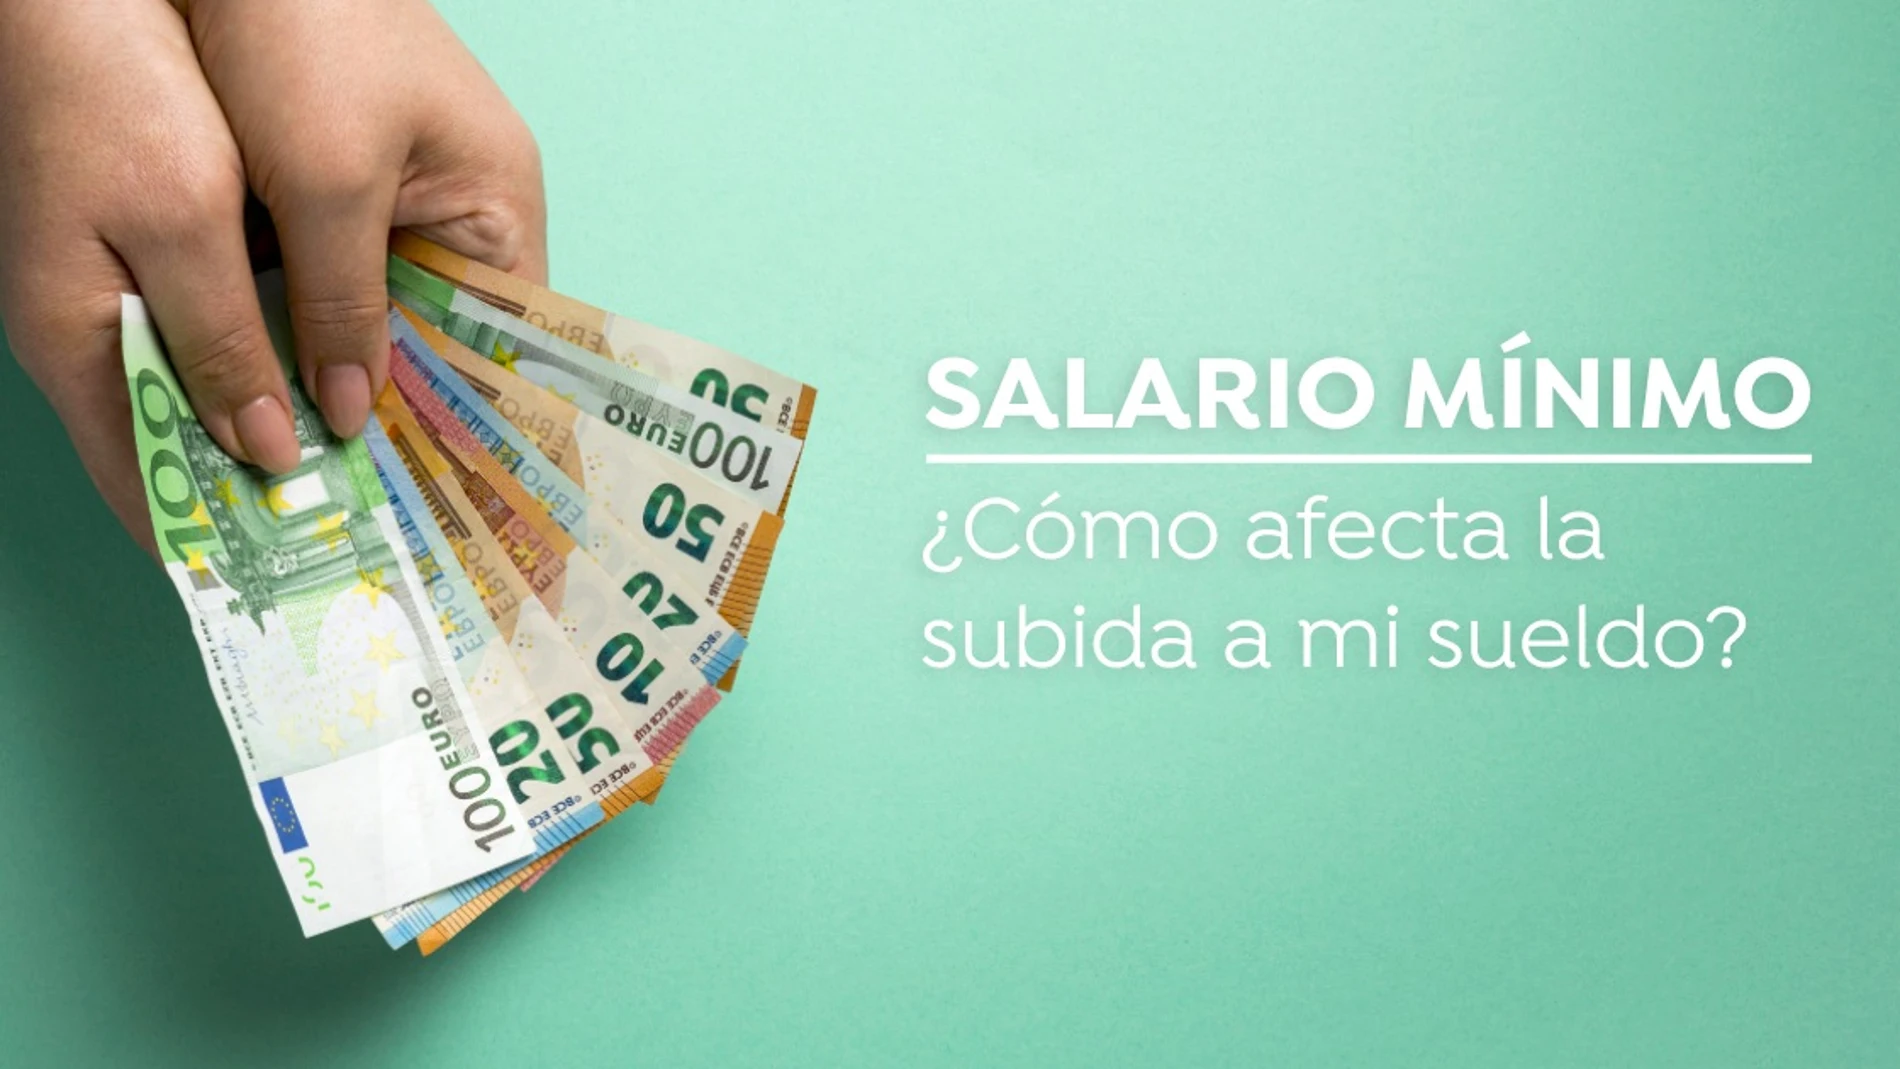 Subida del Salario Mínimo Interprofesional a 1000 euros, ¿cómo afecta a mi sueldo?